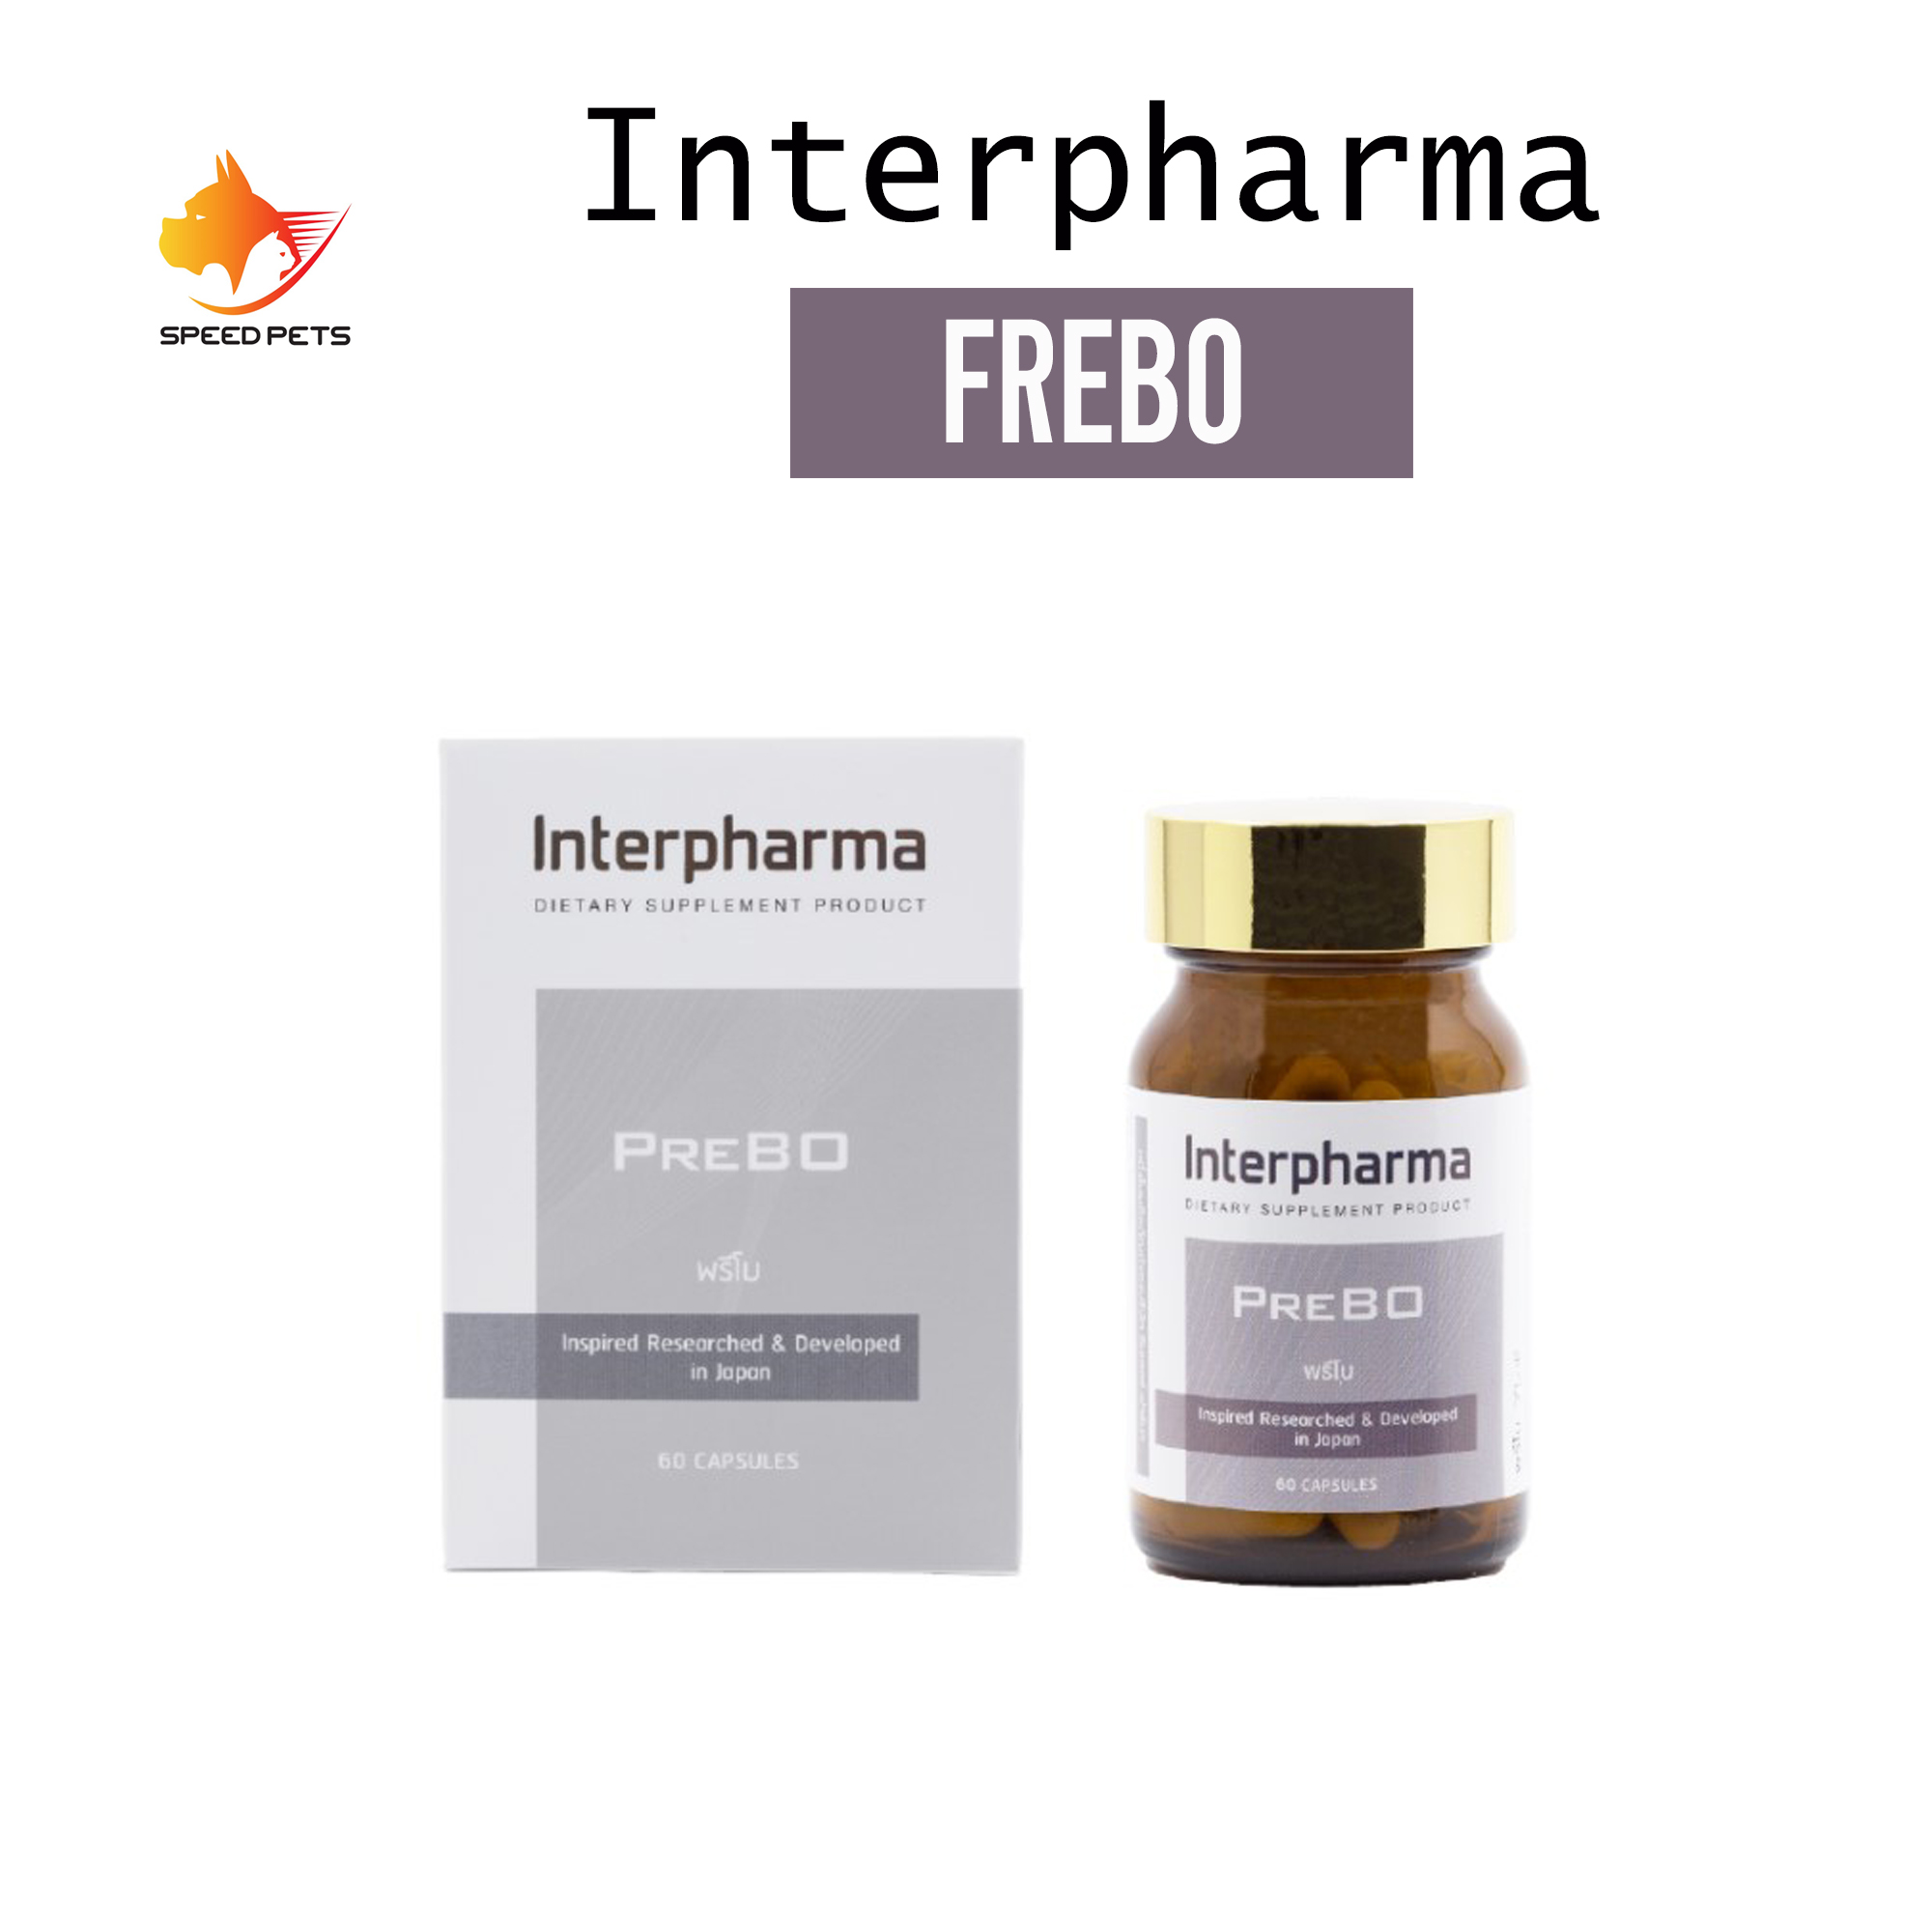 Interpharma PreBO 60แคปซูล ผลิตภัณฑ์เสริมอาหาร ช่วยเสริมสร้างมวลกระดูก ป้องกันโรคกระดูกพรุน EXP 28/10/21